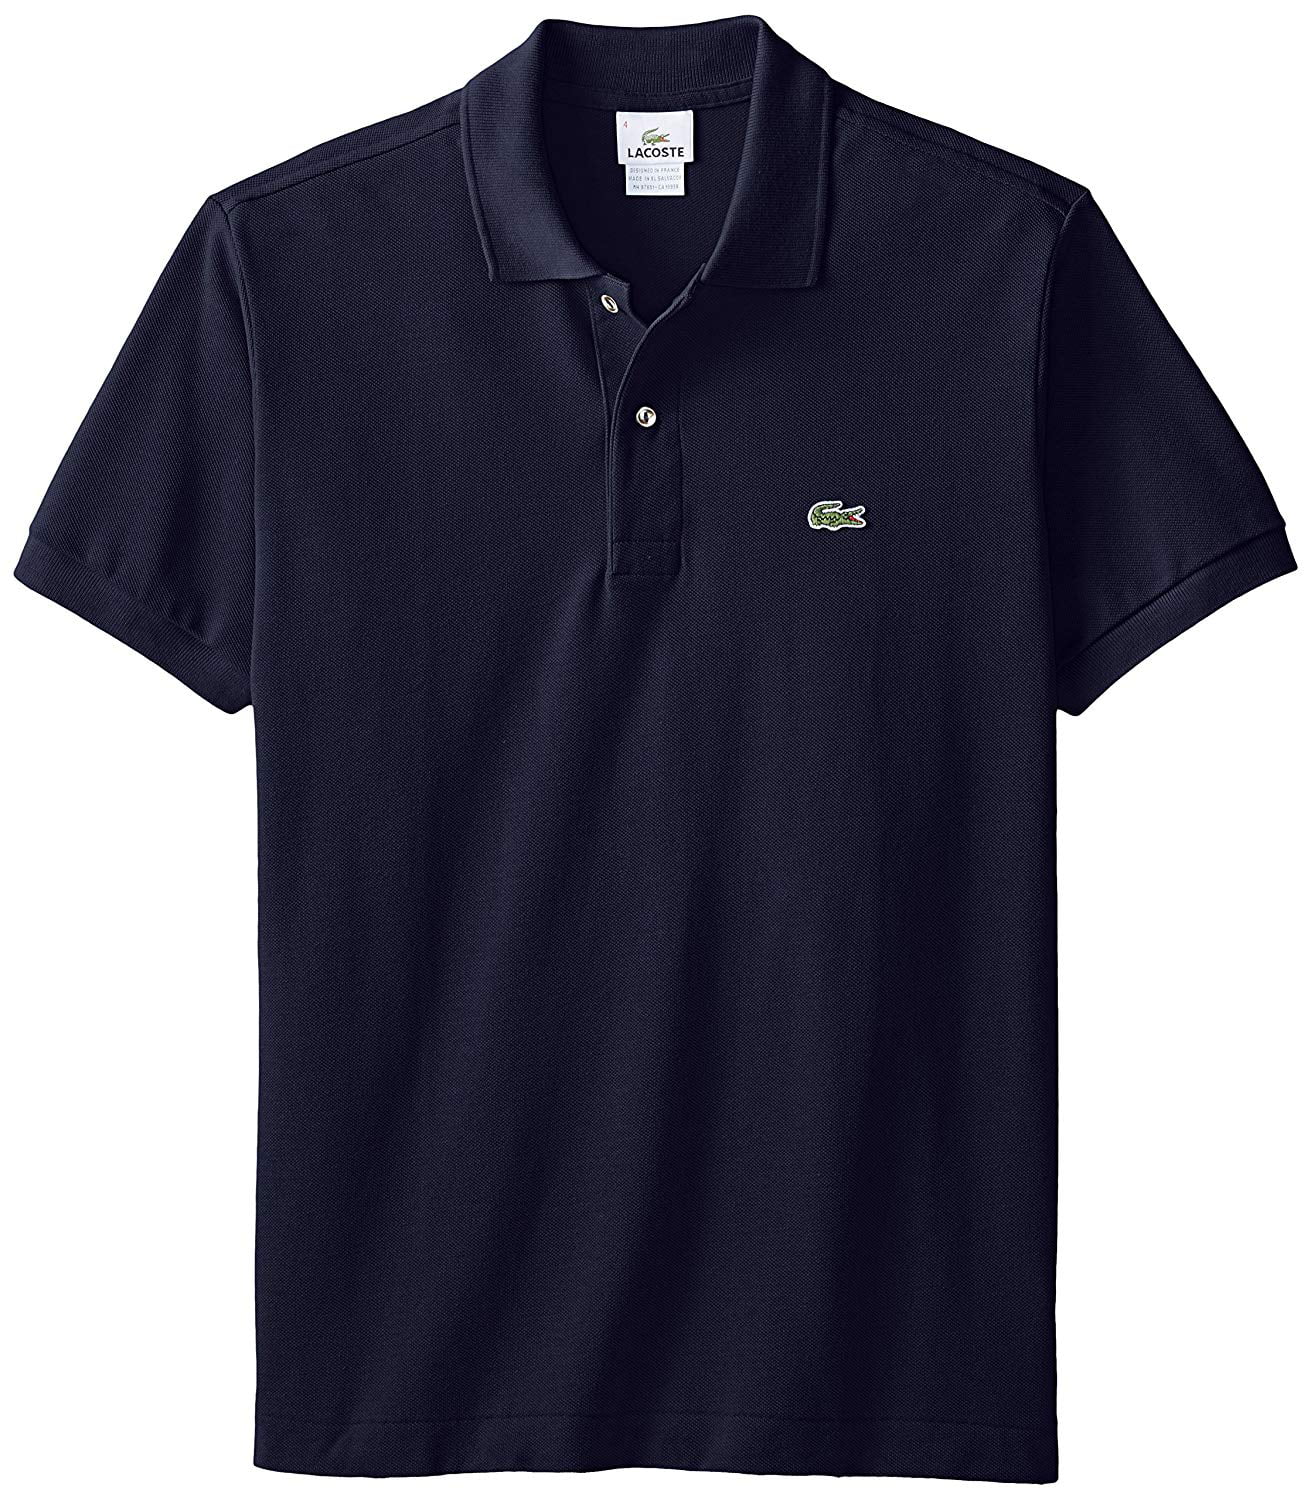 Size 3 4 5 6 7 Lacoste Men's L1212 Polo Shirt Cotton Classic Fit All Colours 